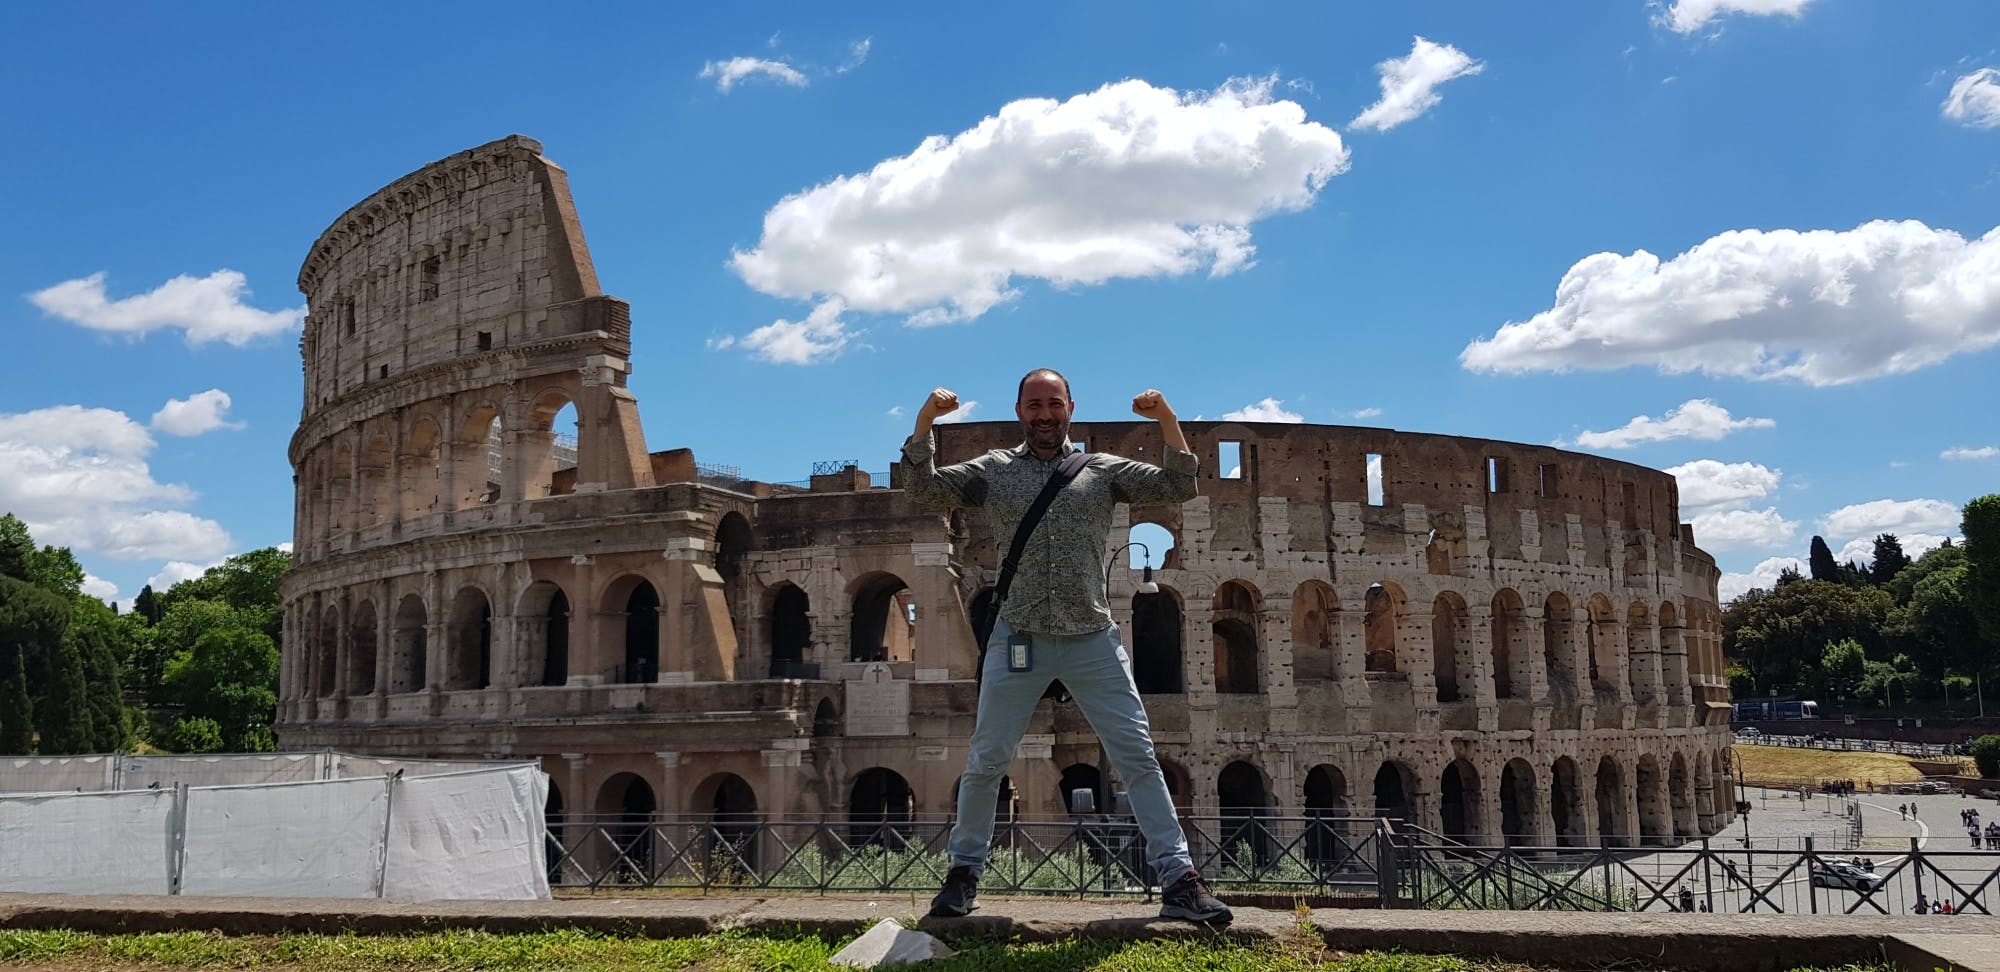 Visite authentique en petit groupe du Colisée et du Forum romain